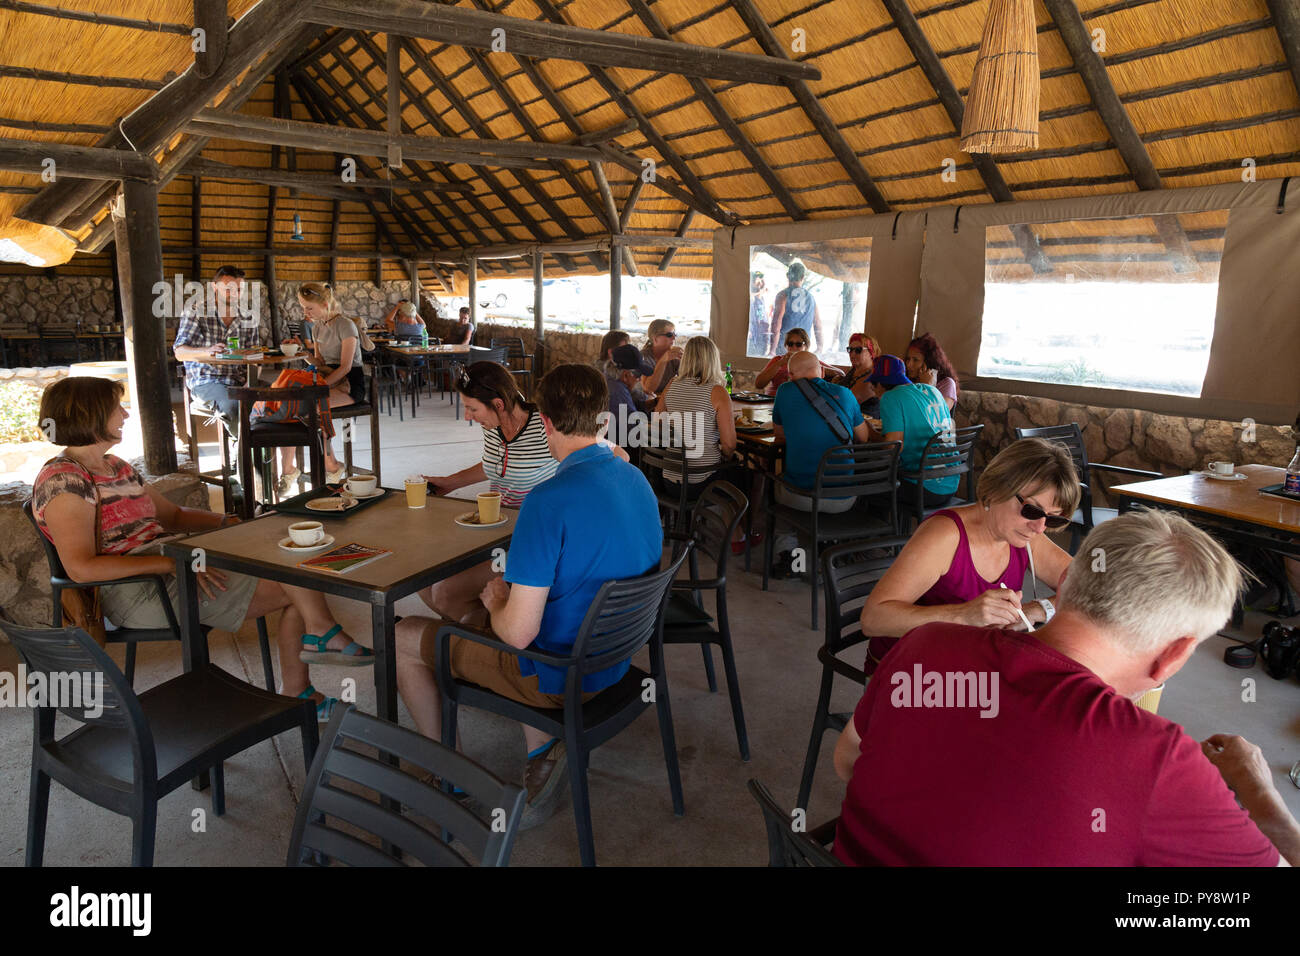 La Namibie cafe - touristes boire ou manger en McGregors Boulangerie, Solitaire sur la façon de Sossusvlei, Namibie, Afrique du Sud Banque D'Images